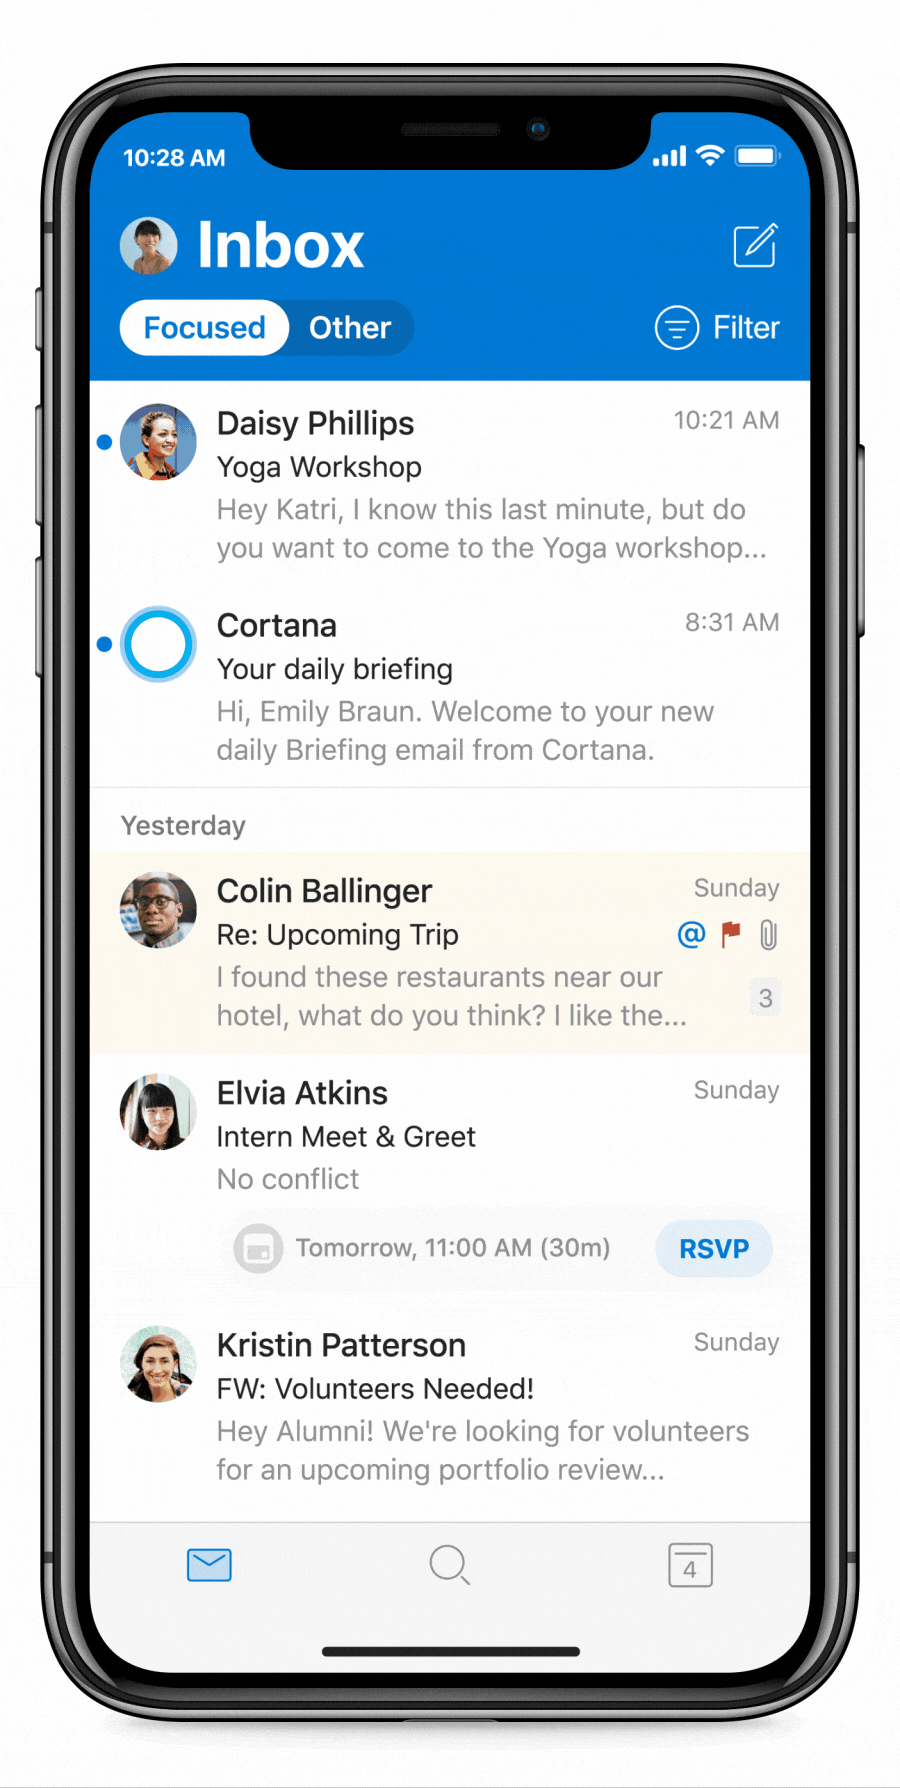 תמונה מונפשת של 'תדרוכים יומיים על-ידי Cortana' ב- Outlook Mobile. המשתמש פותח תדרוך יומי, מסמן דוח איכות כמשימה שהושלמה, משימה שהושלמה ומשריין זמן מיקוד לפני שהוא בודק את לוח השנה שלו.